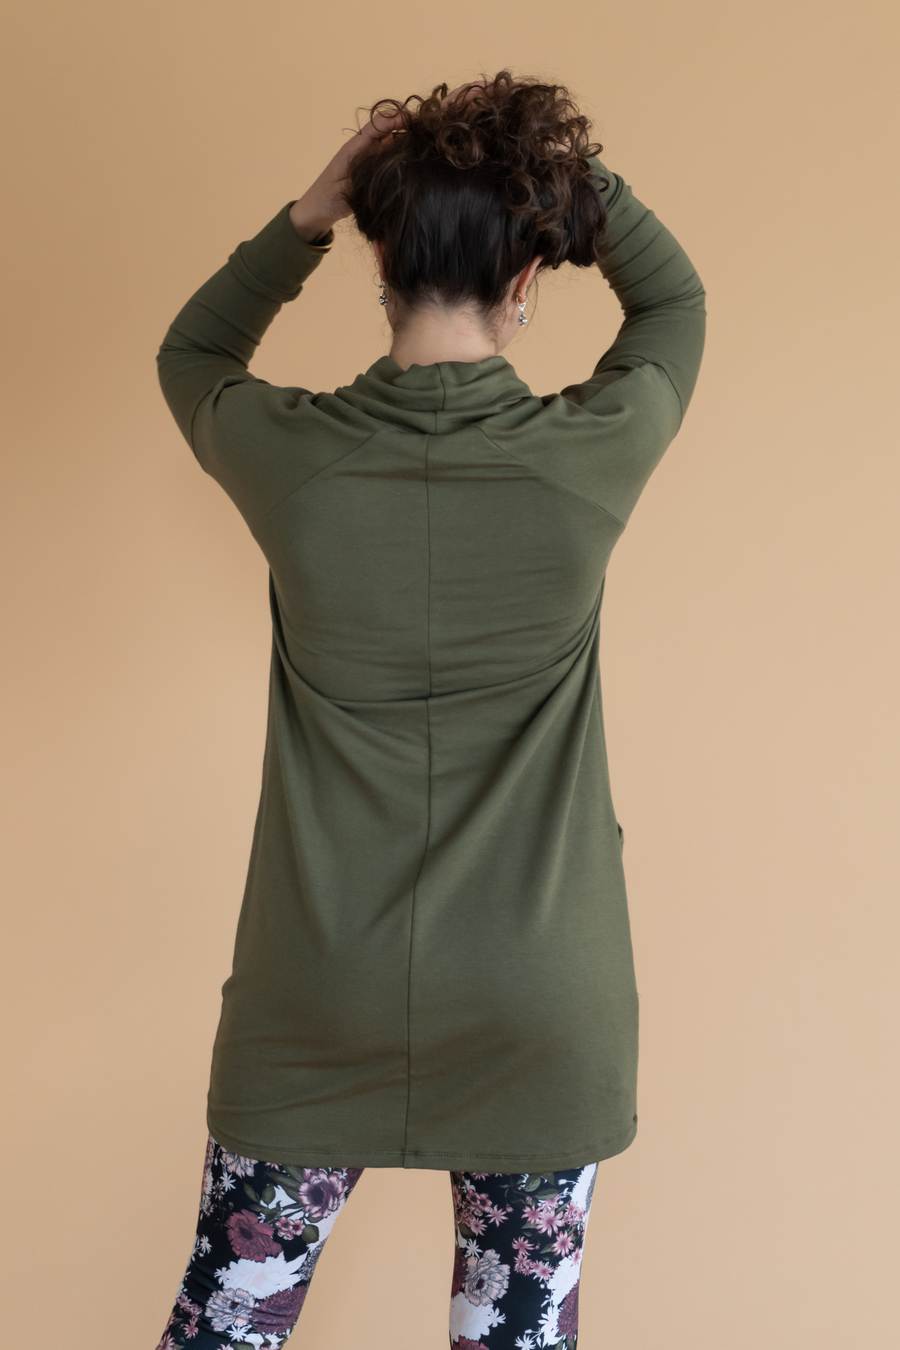 Tunique pour femme vert khaki à manches longues et col haut, avec poches, faite au Québec.